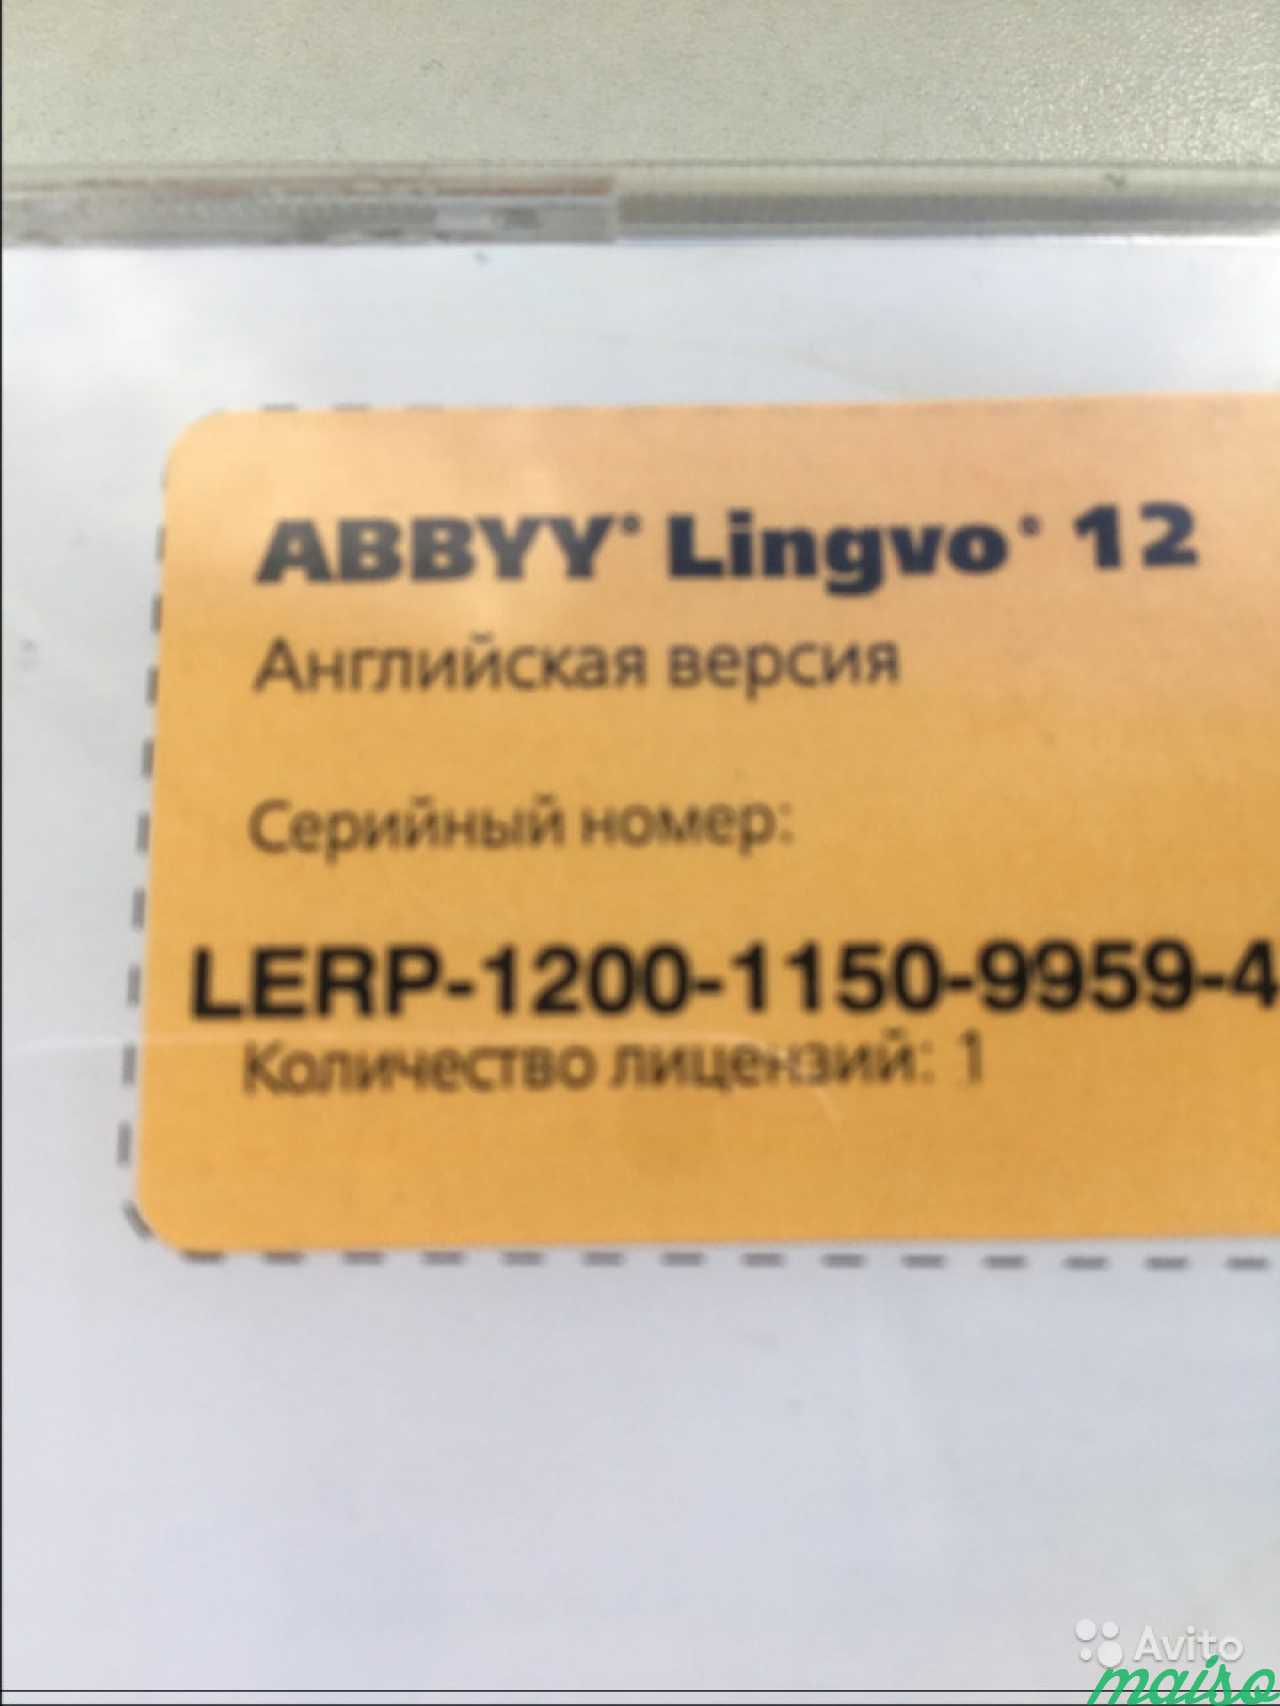 Словарь abbyy Lingvo 12 лицензионный в Санкт-Петербурге. Фото 2